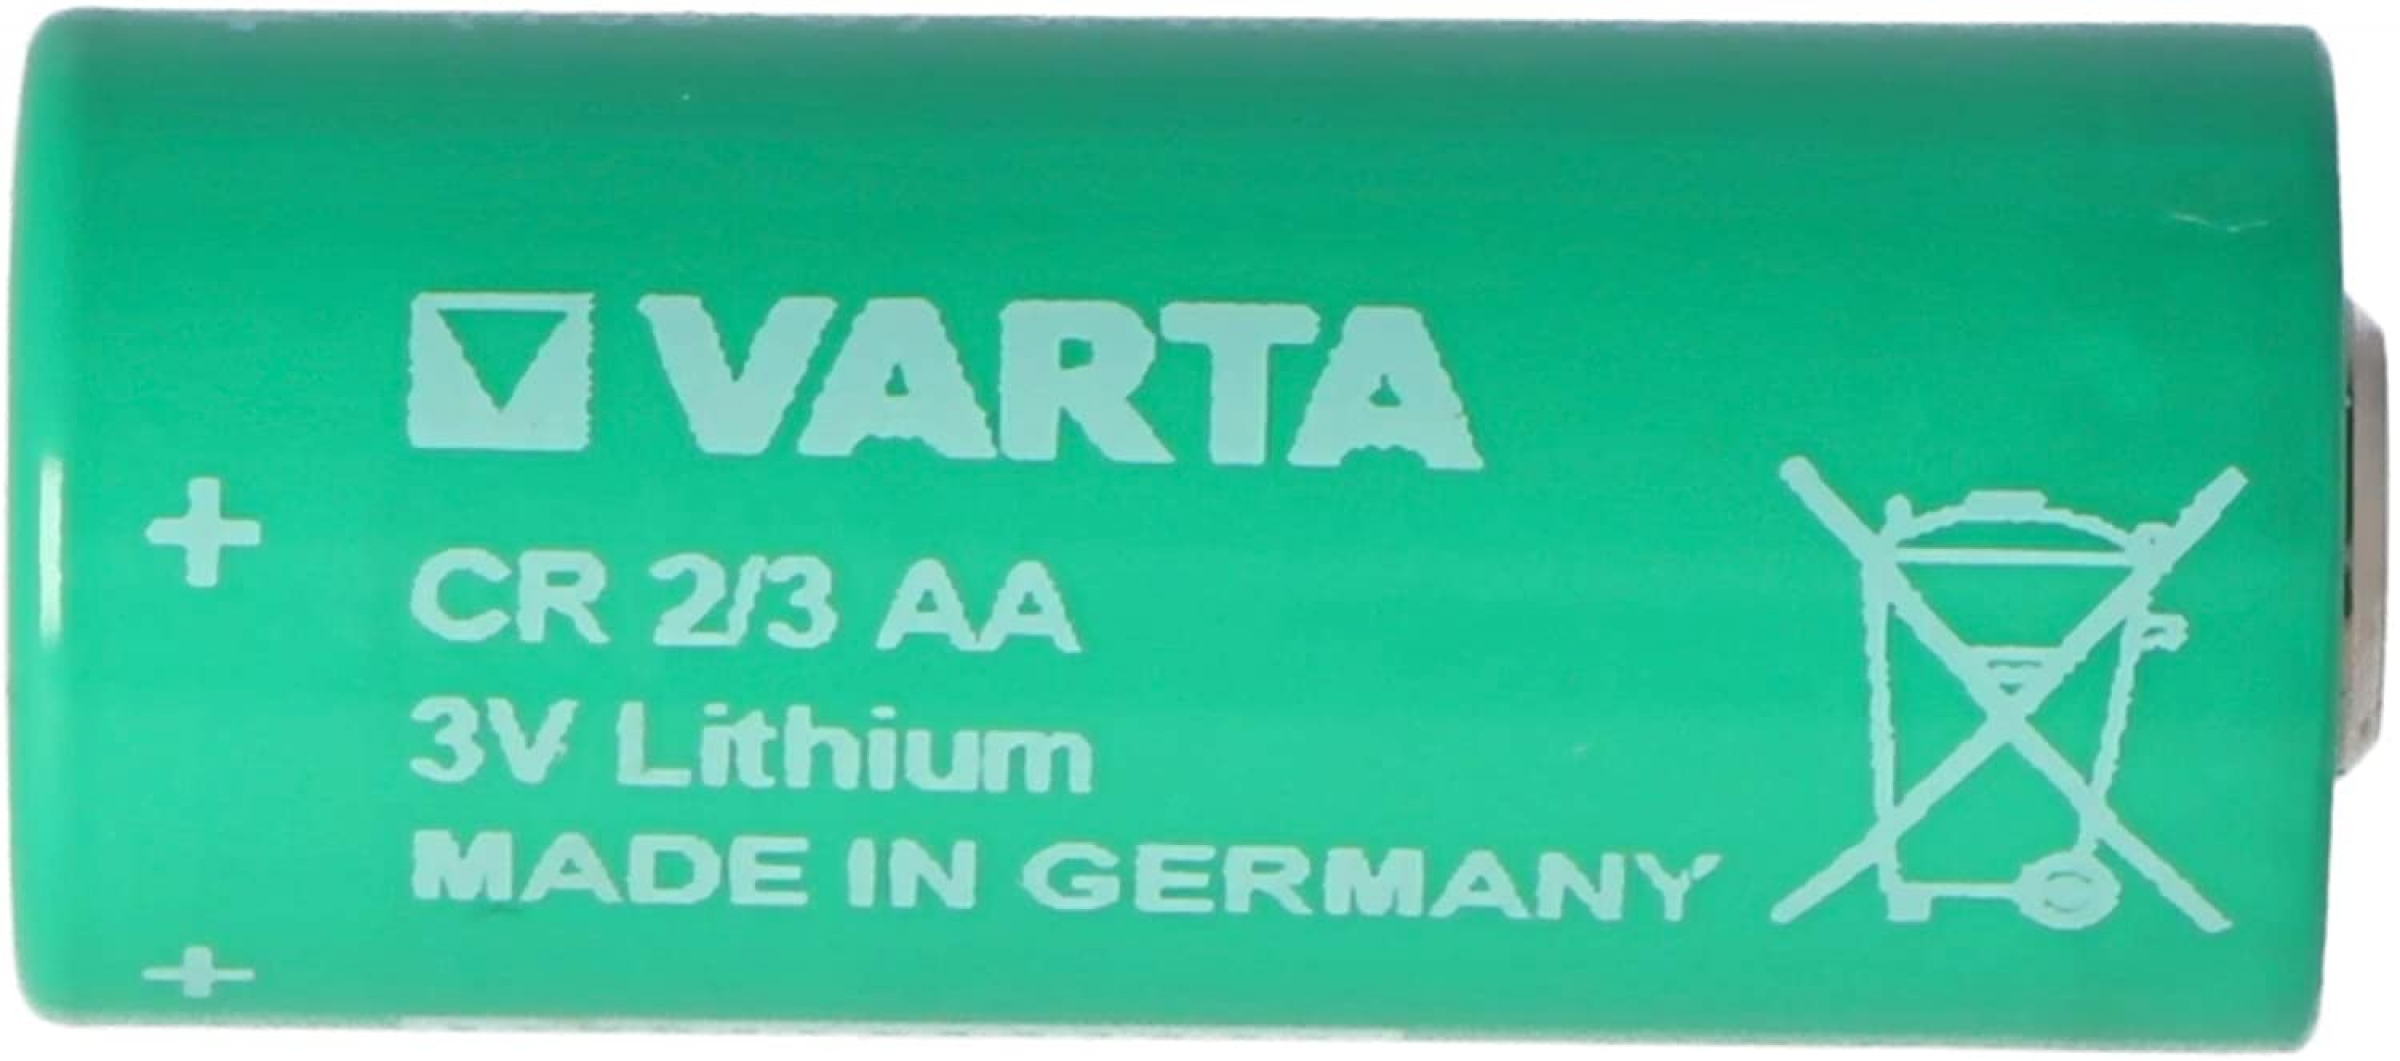 Varta Lithium CR 2/3 AA 6237 3,0 Volt  NO TABS - lose 1